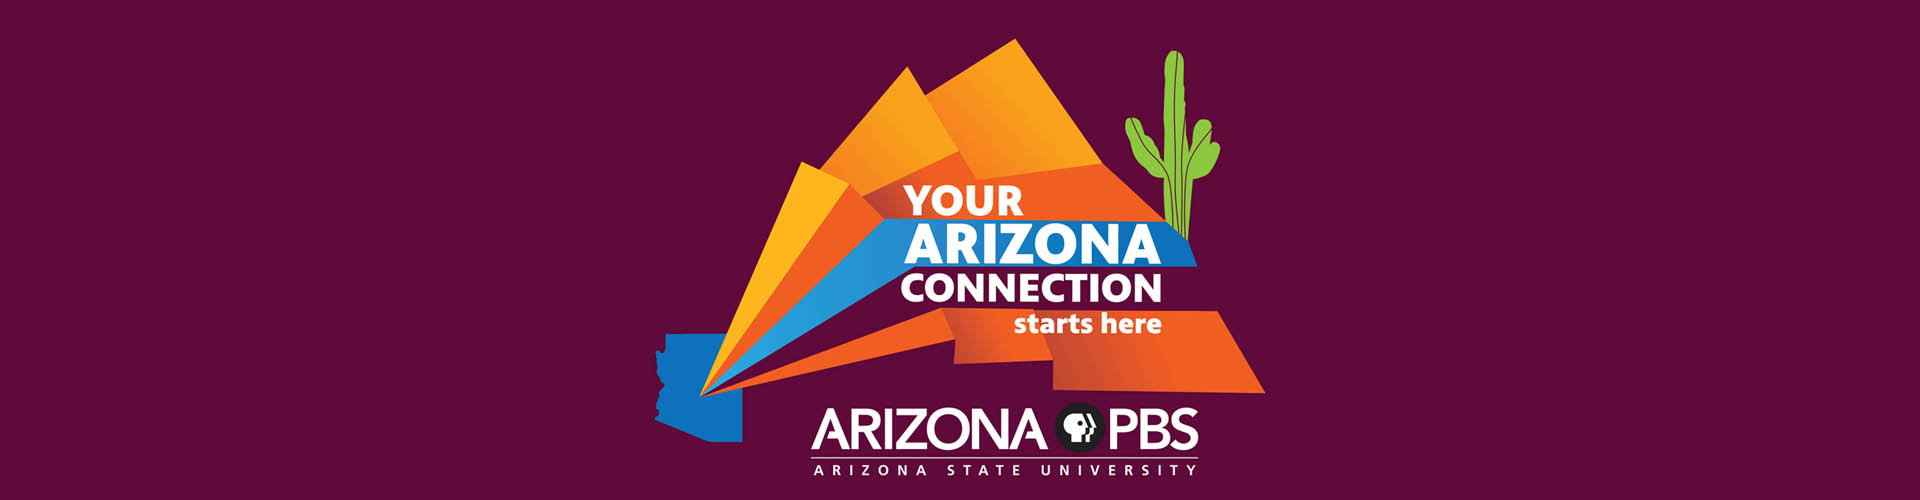 Your Arizona Connection Starts Here: Arizona PBS